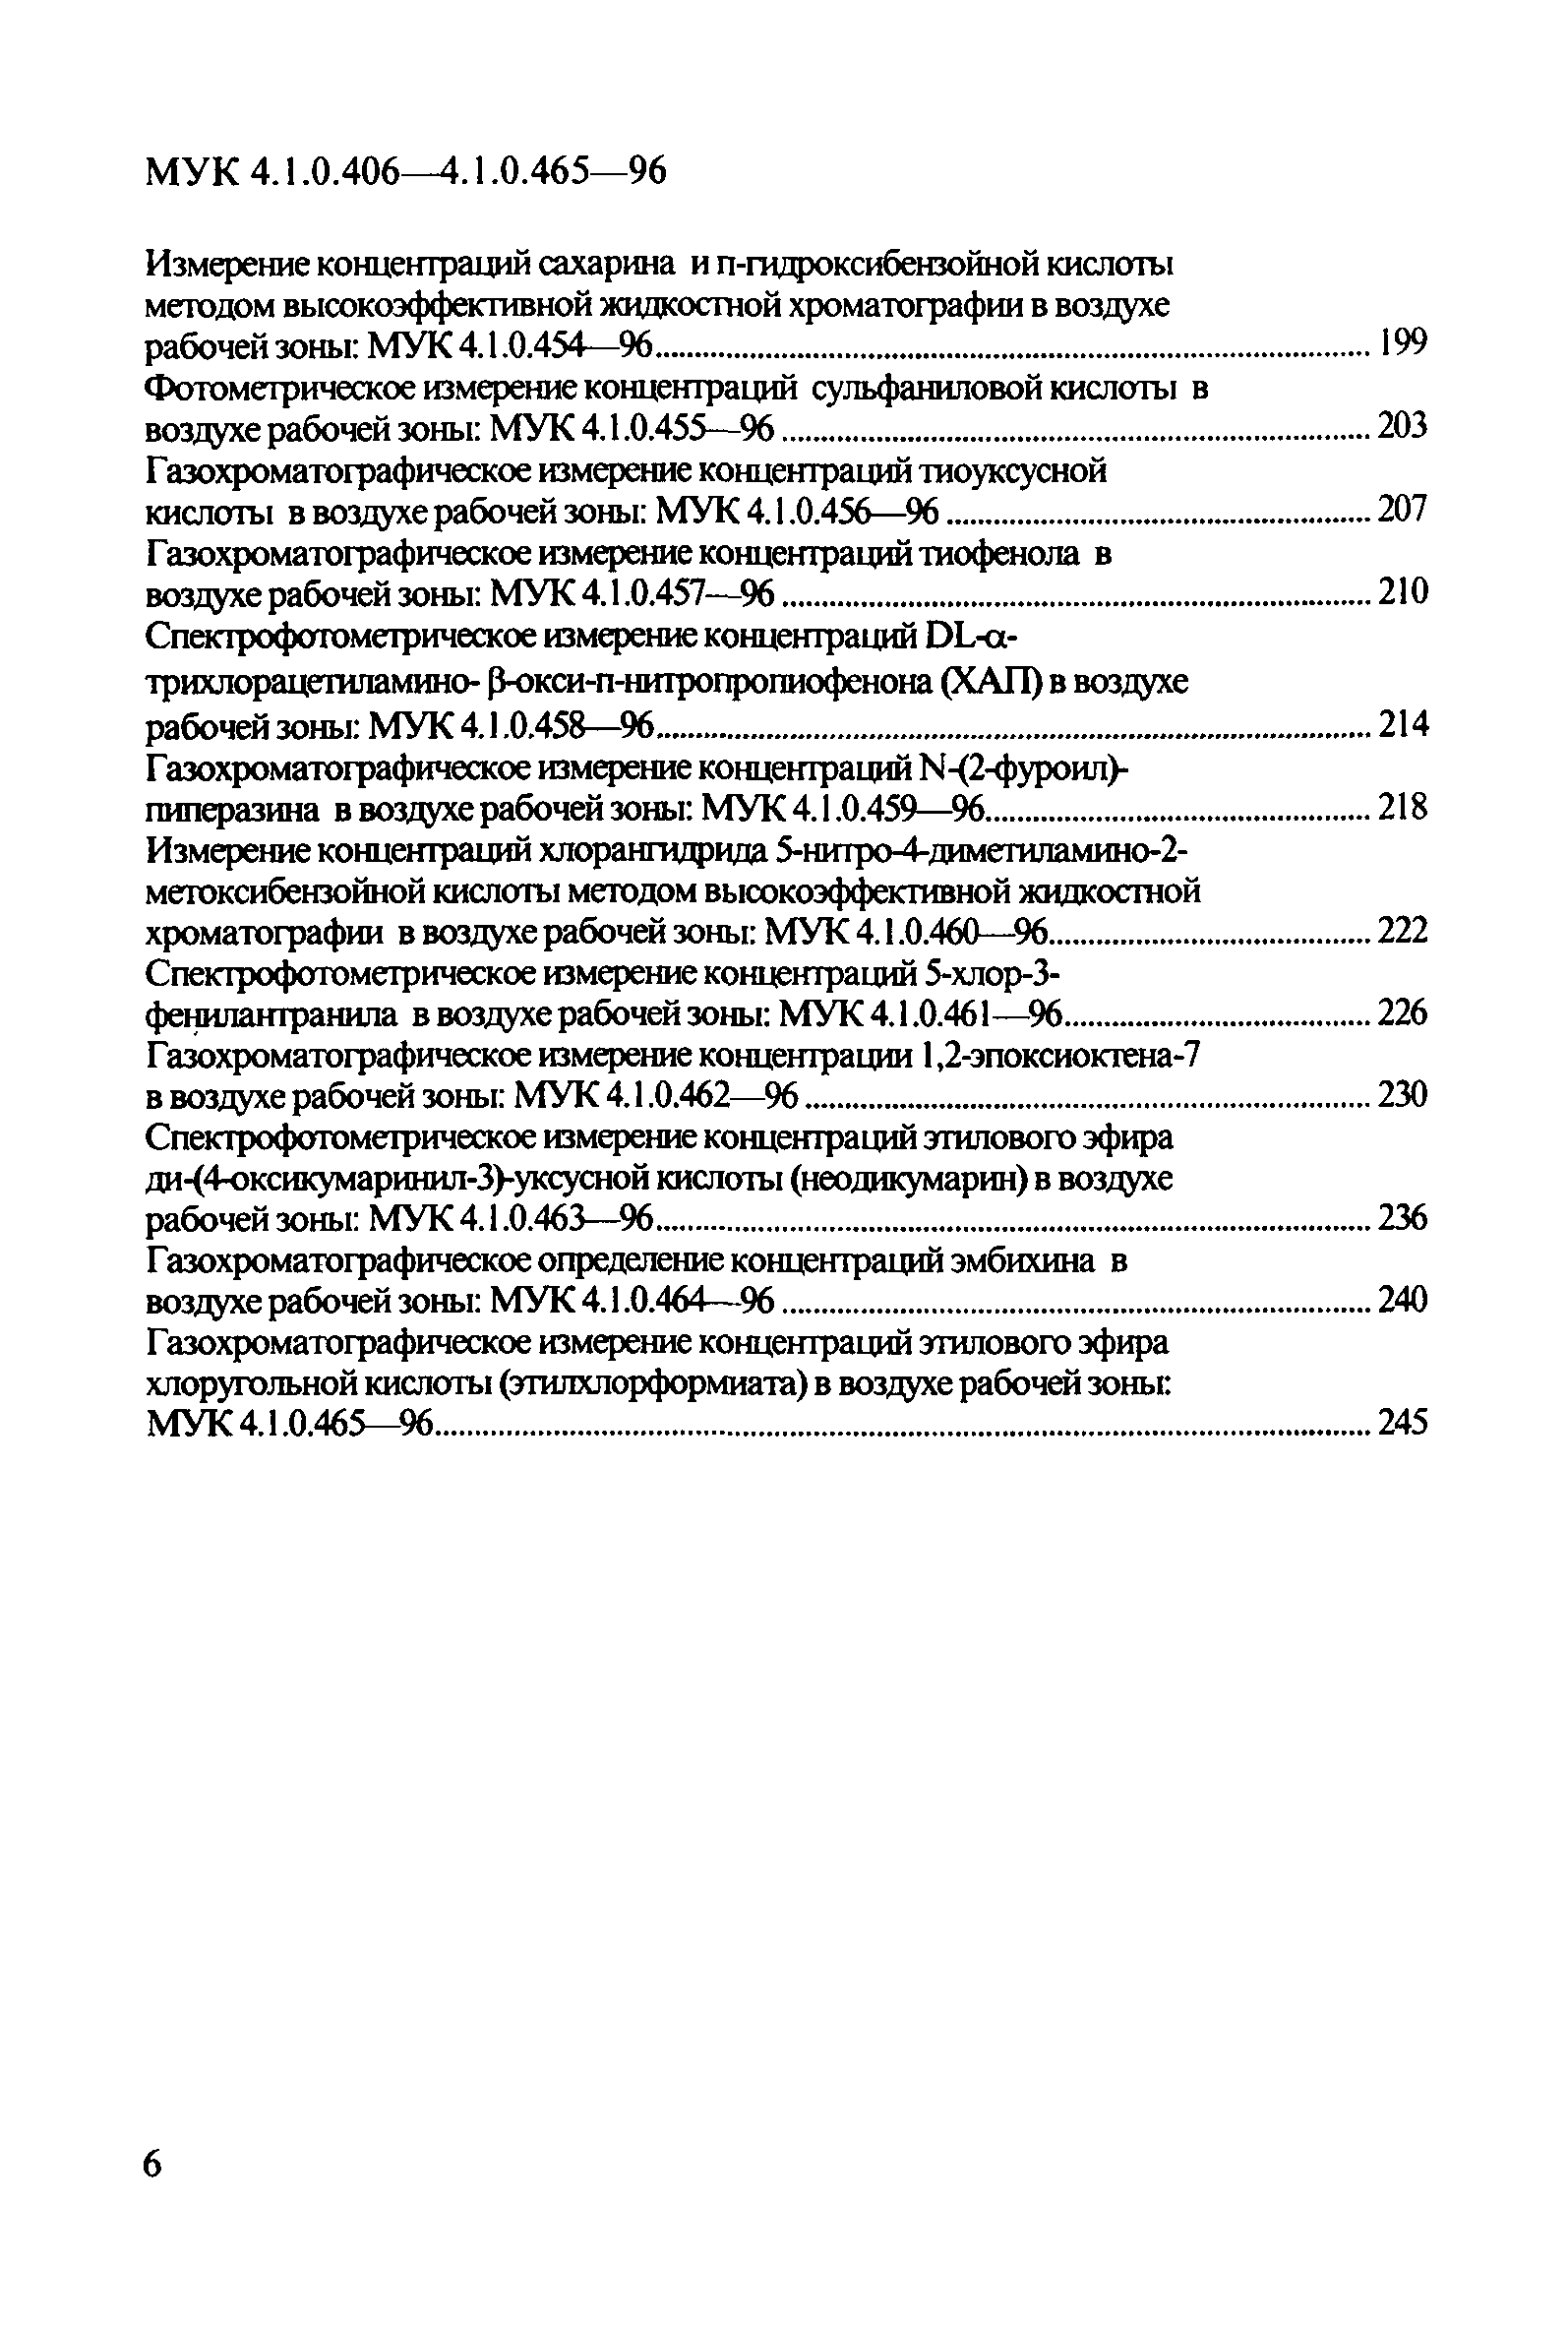 МУК 4.1.0.426-96